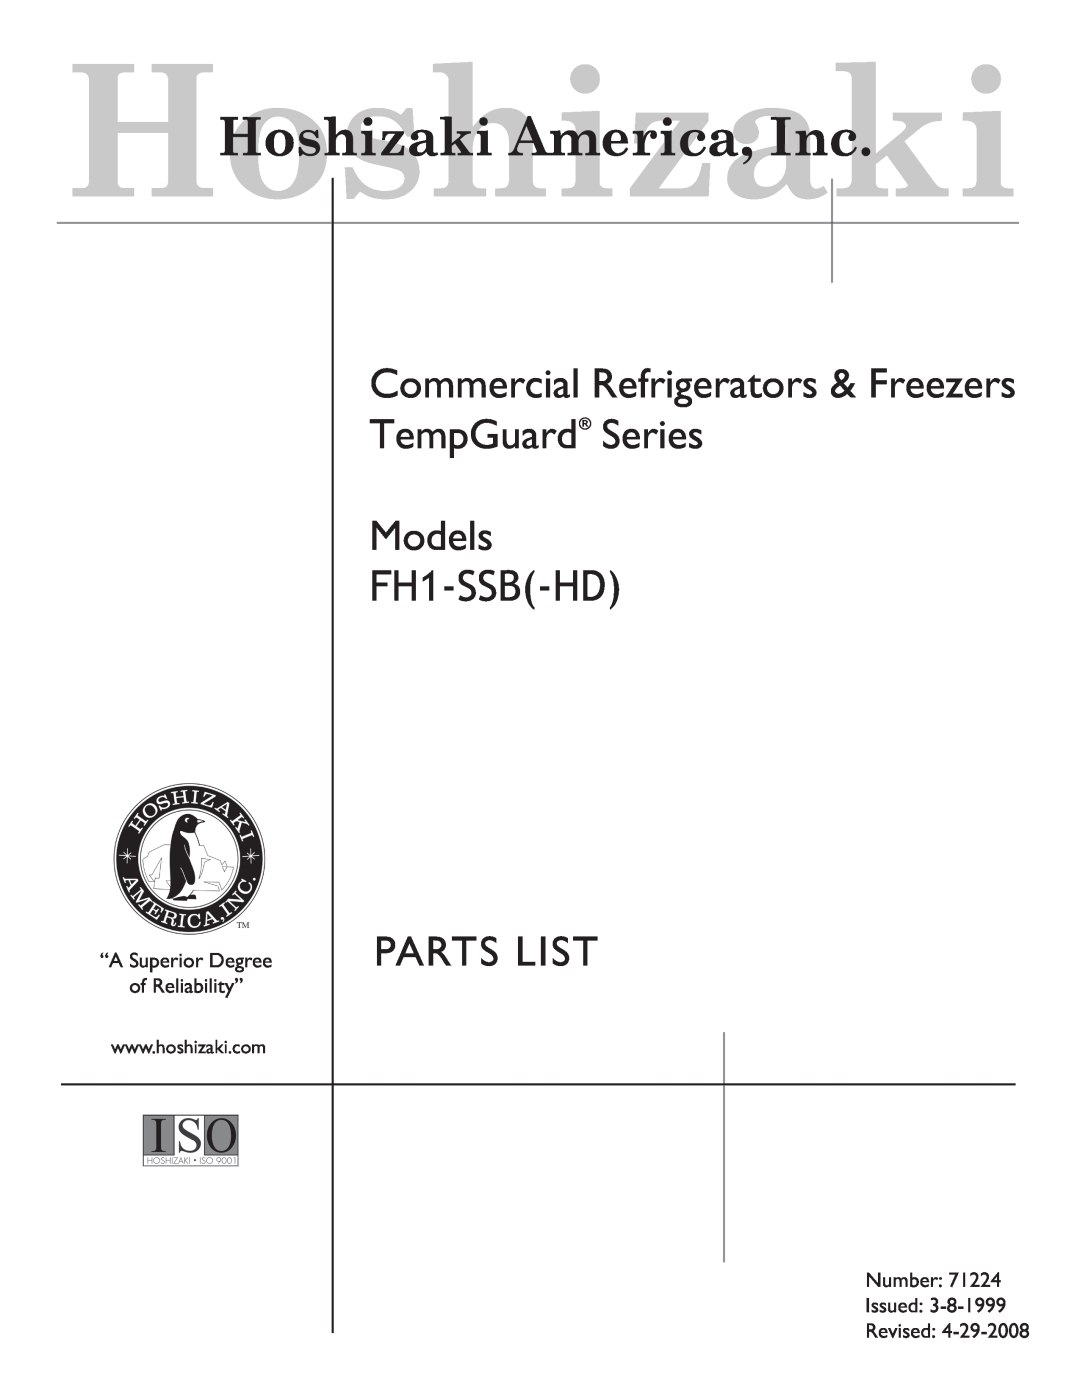 Hoshizaki FH1-SSB(-HD) manual Commercial Refrigerators & Freezers, TempGuard Series Models, FH1-SSB-HD, Parts List 